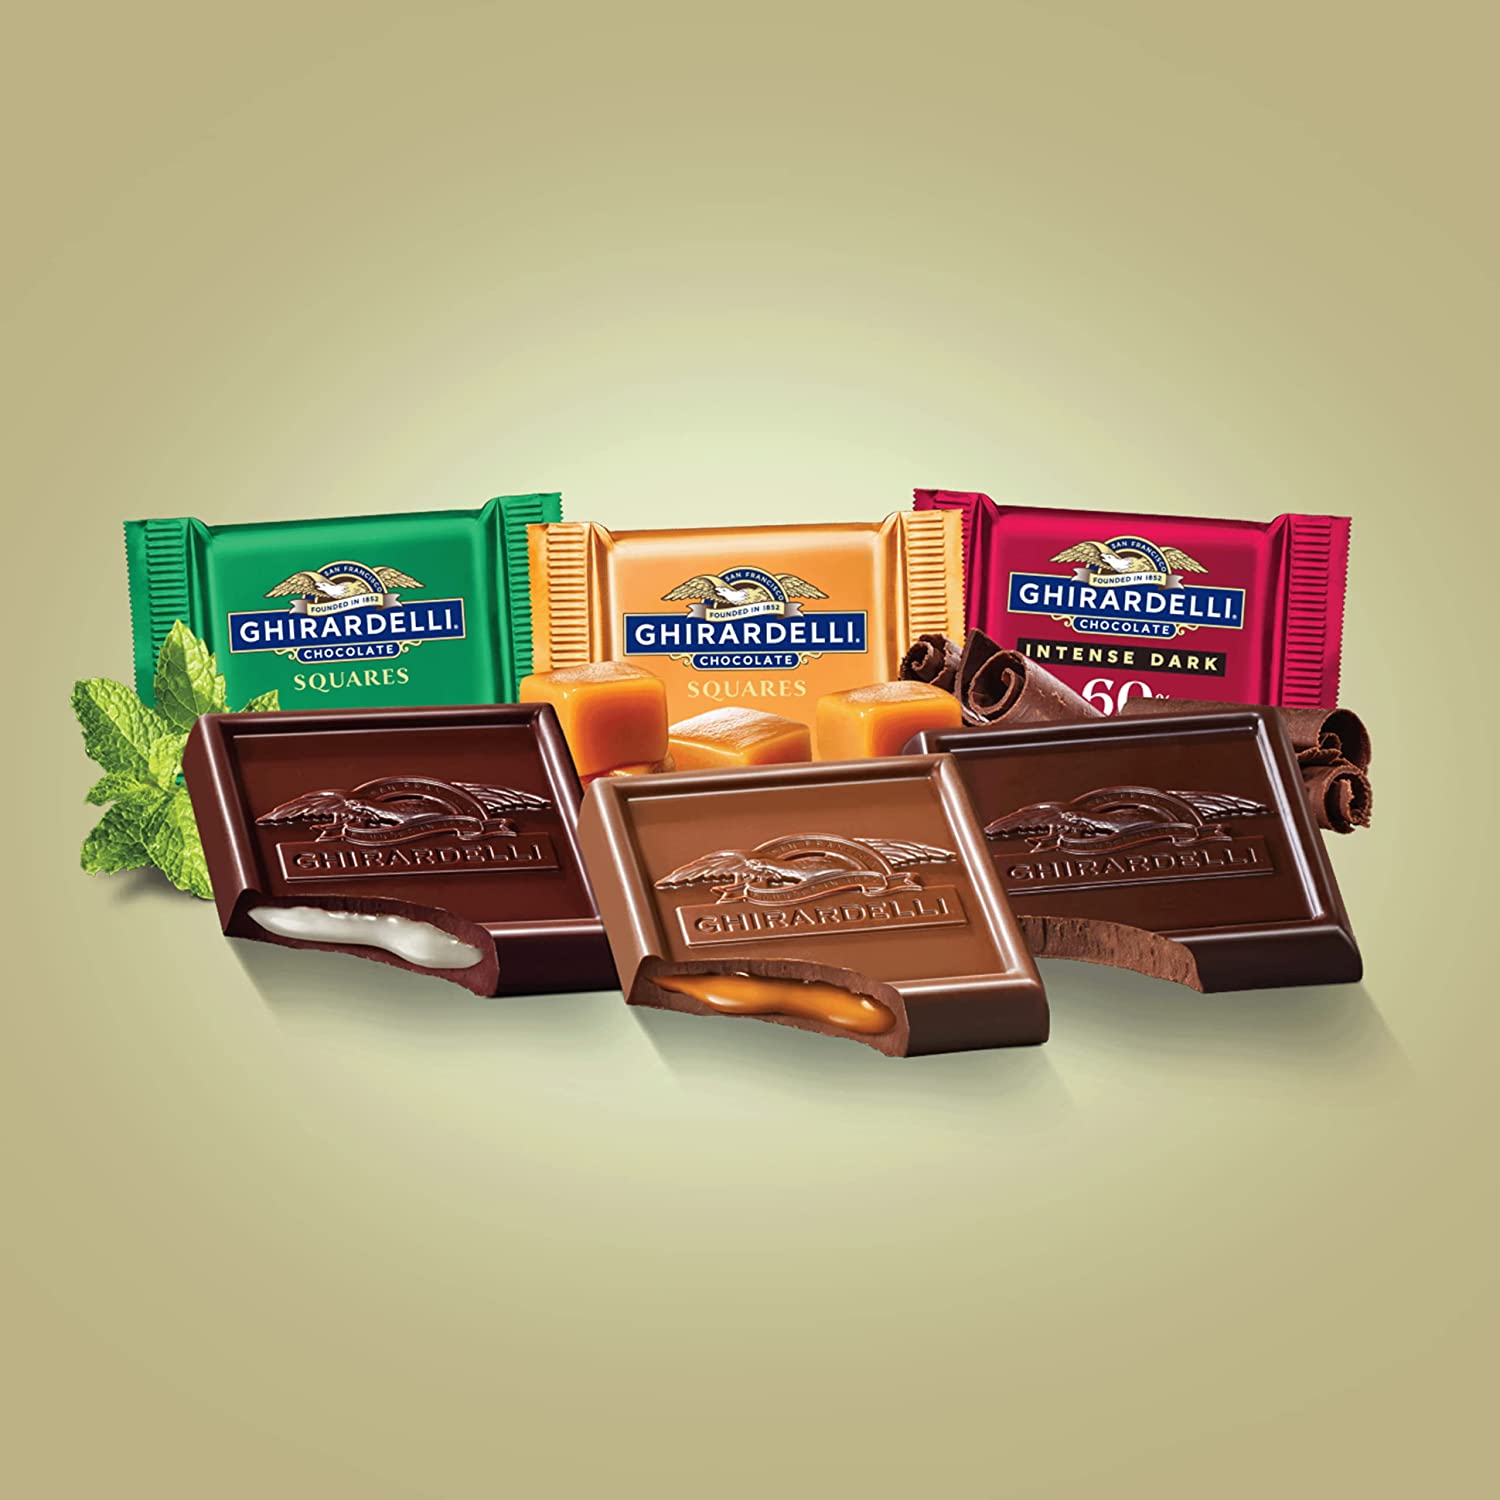 TÚI 3 LOẠI SOCOLA ĐEN - SỮA MIẾNG VUÔNG (Bạc hà Mint, Caramel, 60% Cacao) GHIRARDELLI Assorted Chocolate Squares, 137,6g